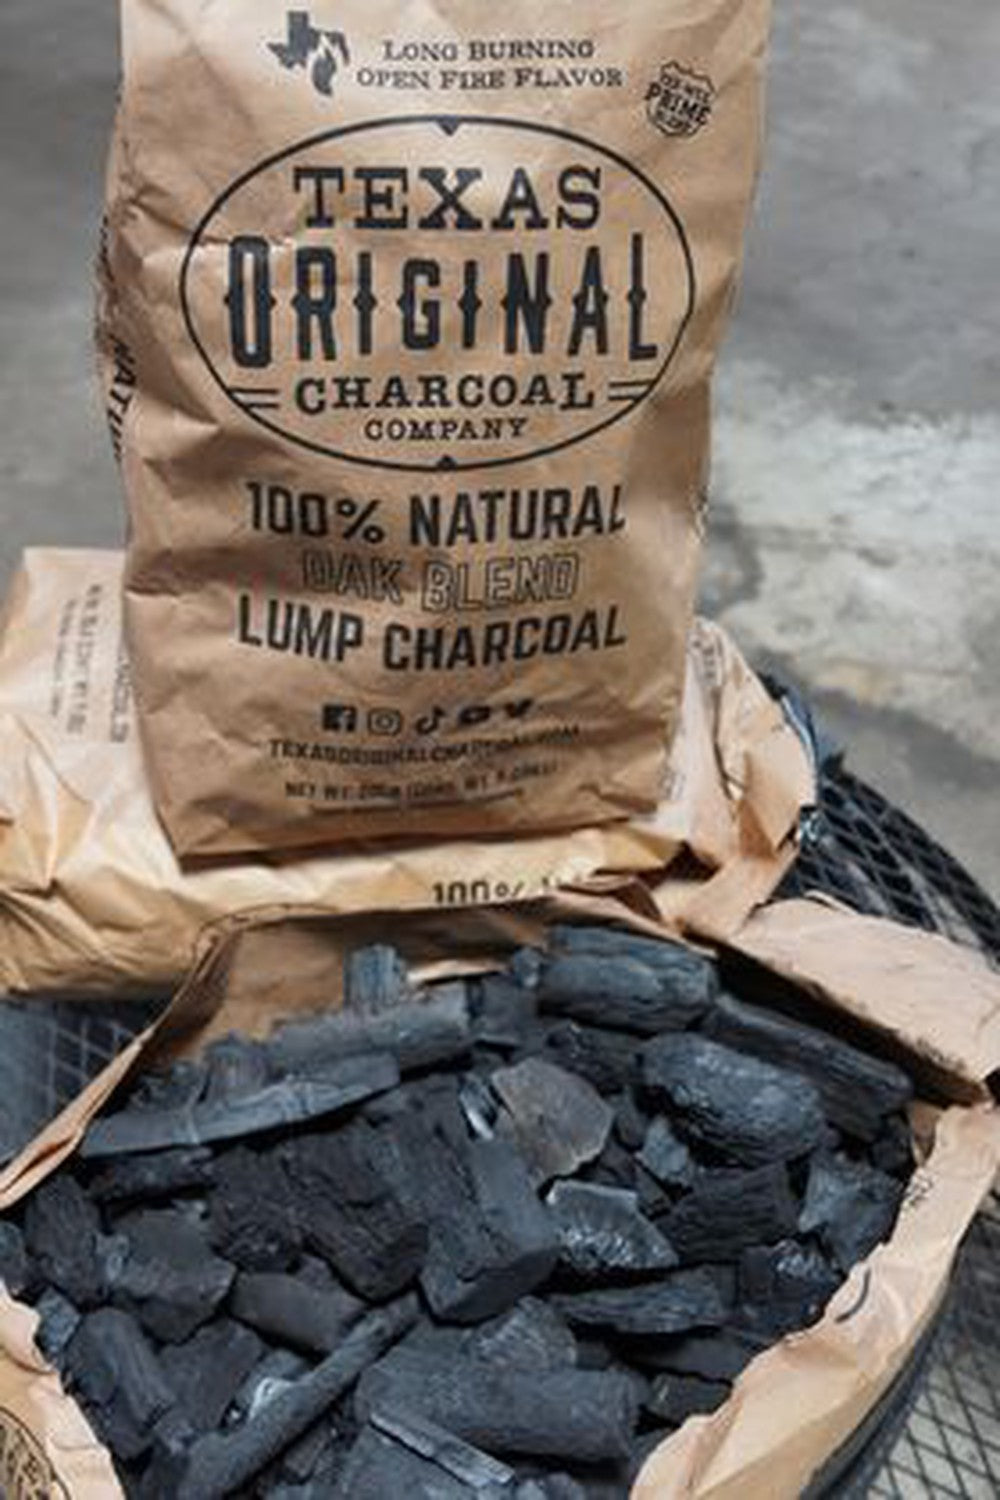 Texas Original Charcoal - 100% Natural Oak Blend Lump Charcoal